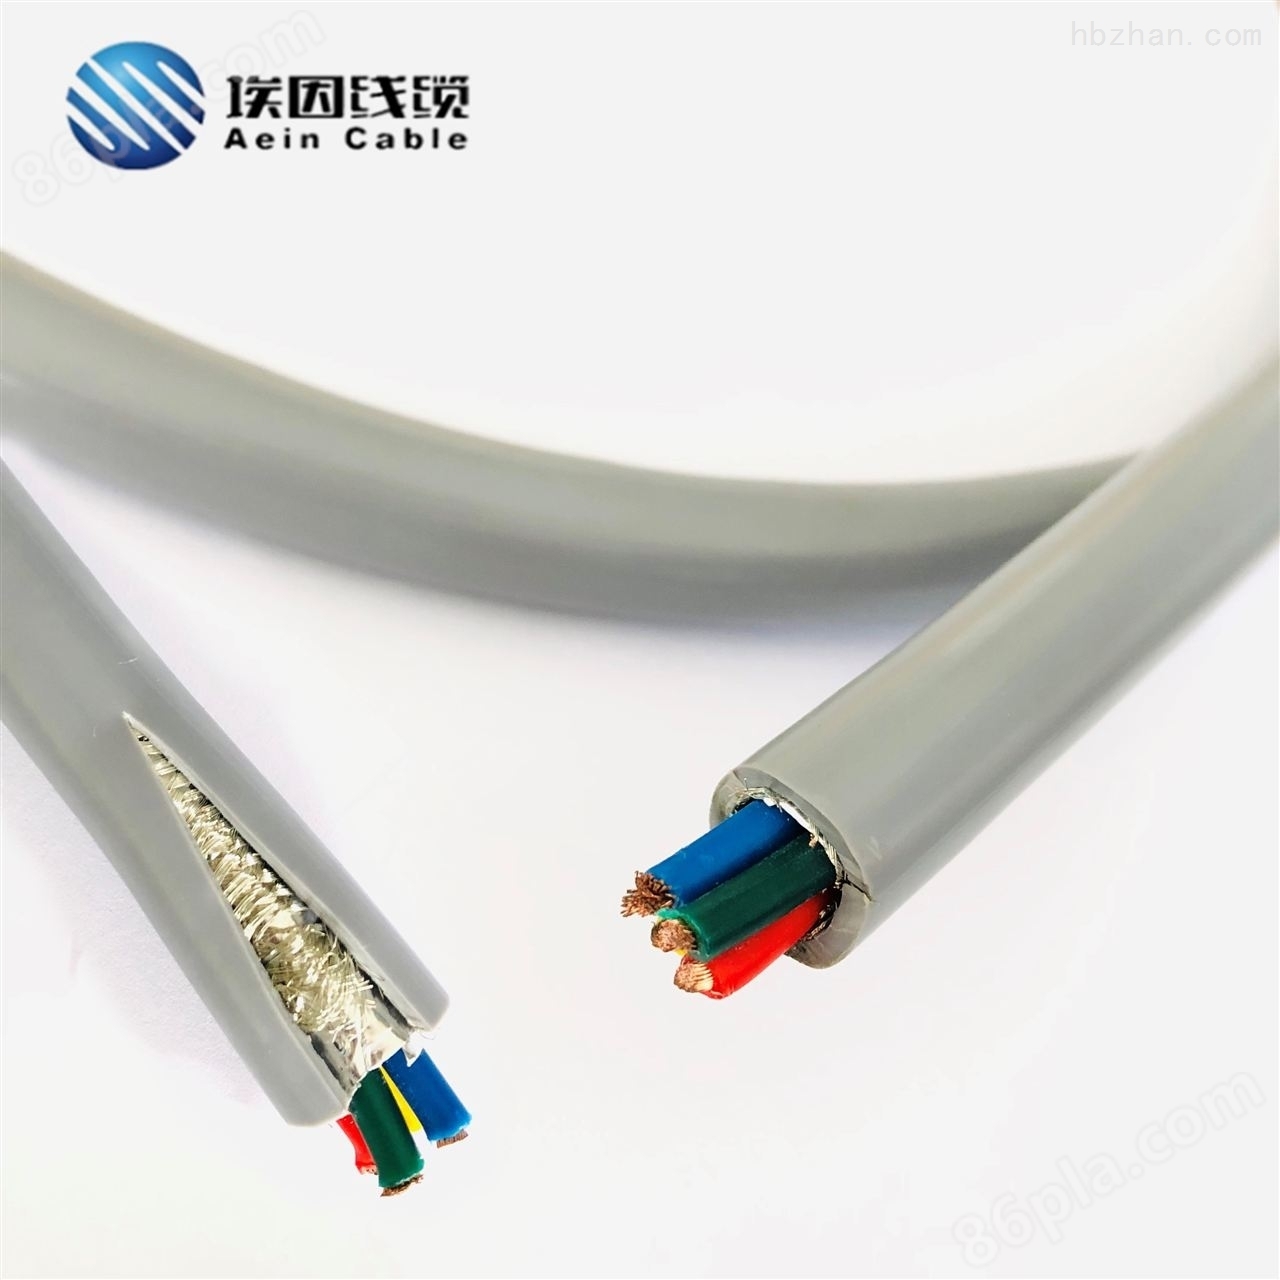 高柔性伺服编码器电缆生产商